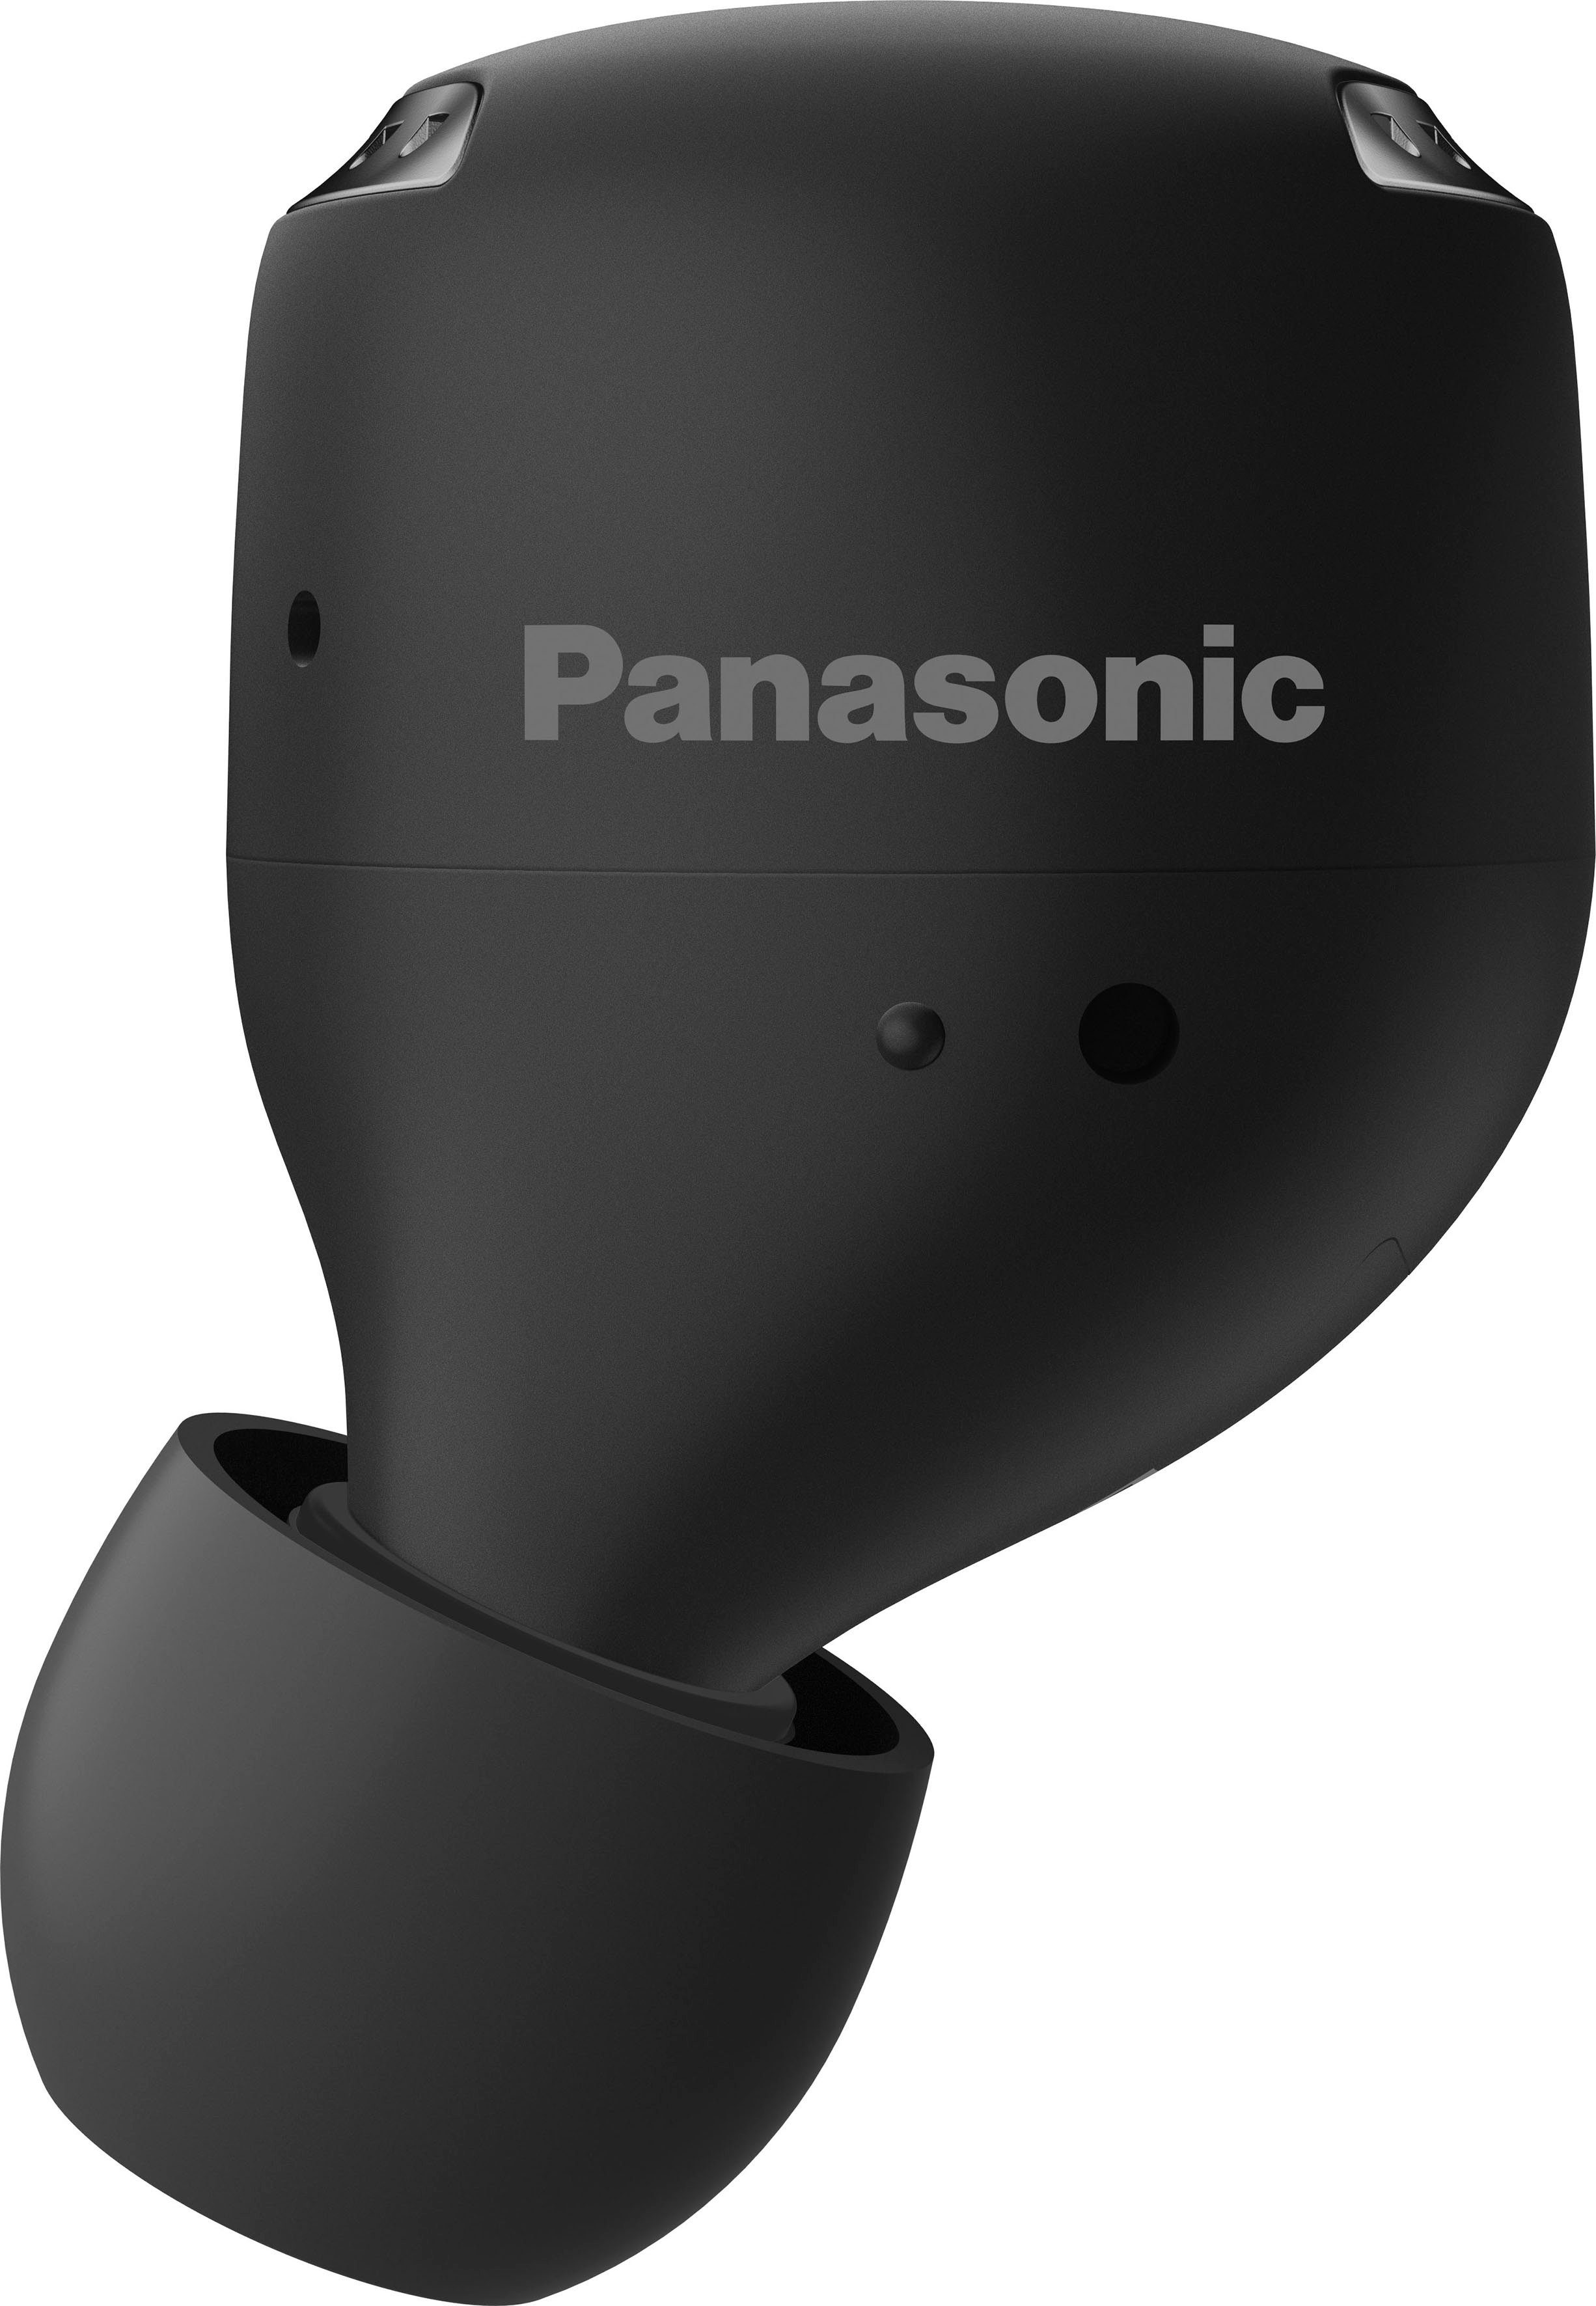 True wireless Bluetooth) Sprachsteuerung, Panasonic (Noise-Cancelling, RZ-S500WE In-Ear-Kopfhörer Wireless, schwarz